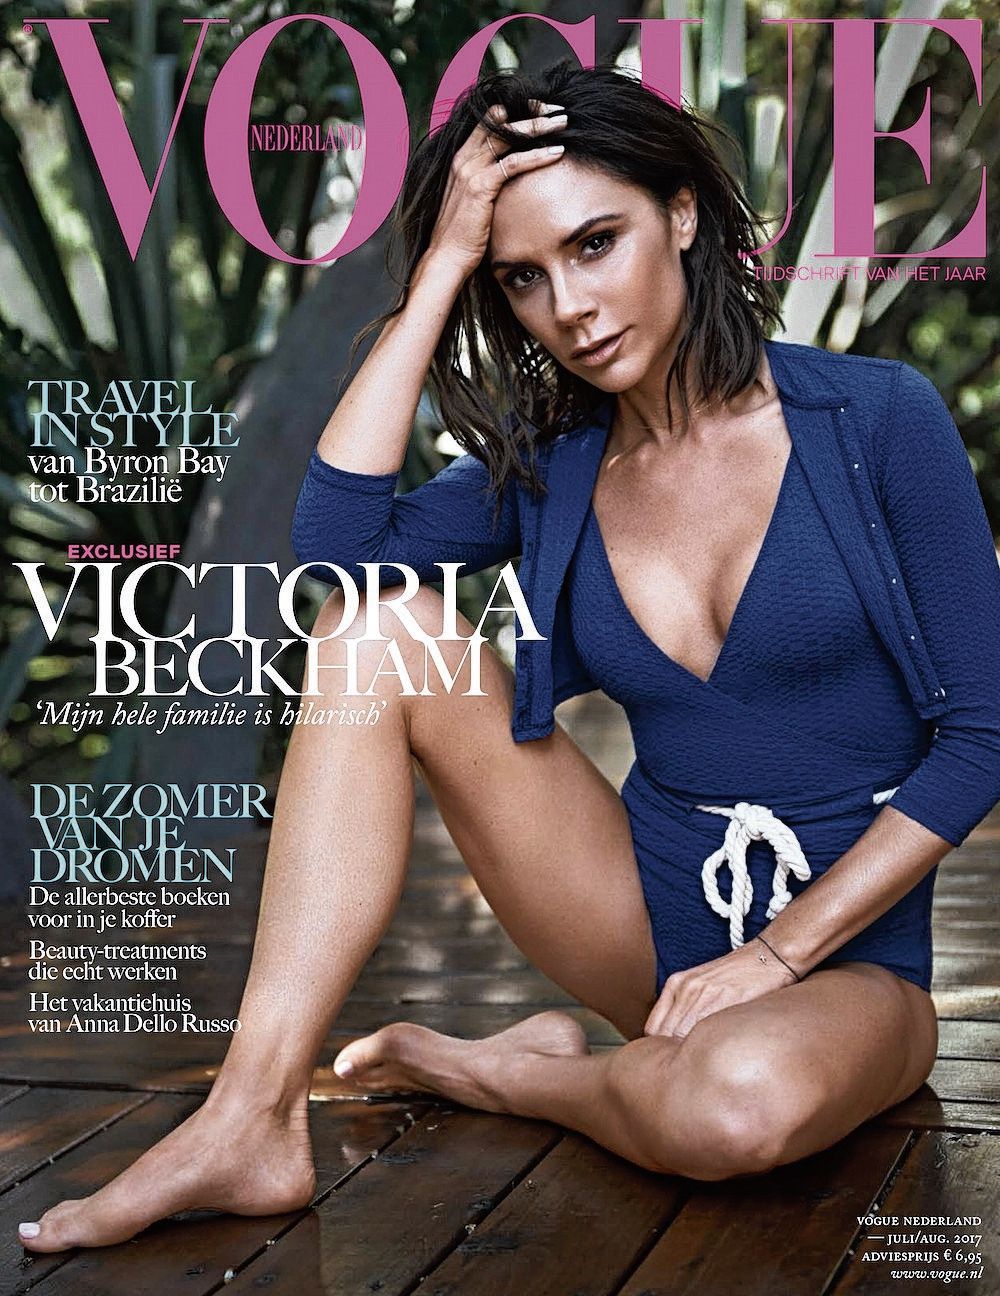 De Nederlandse Vogue is een van de titels die G+J in licentie uitgeeft.